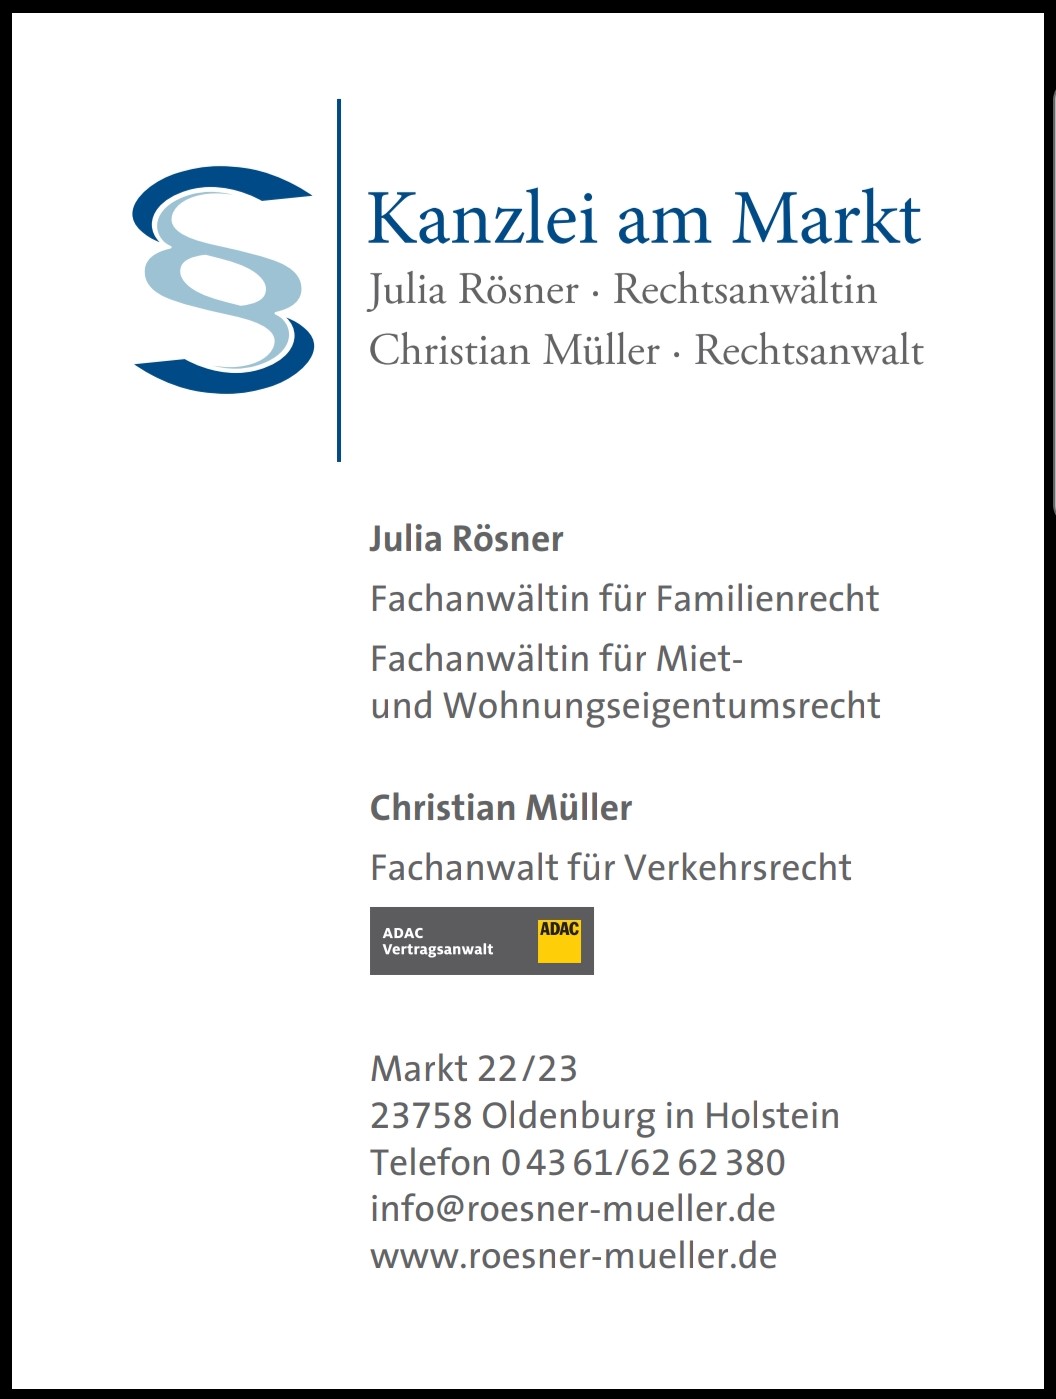 Fotos - Kanzlei am Markt Julia Rösner | Christian Müller Rechtsanwälte - 2